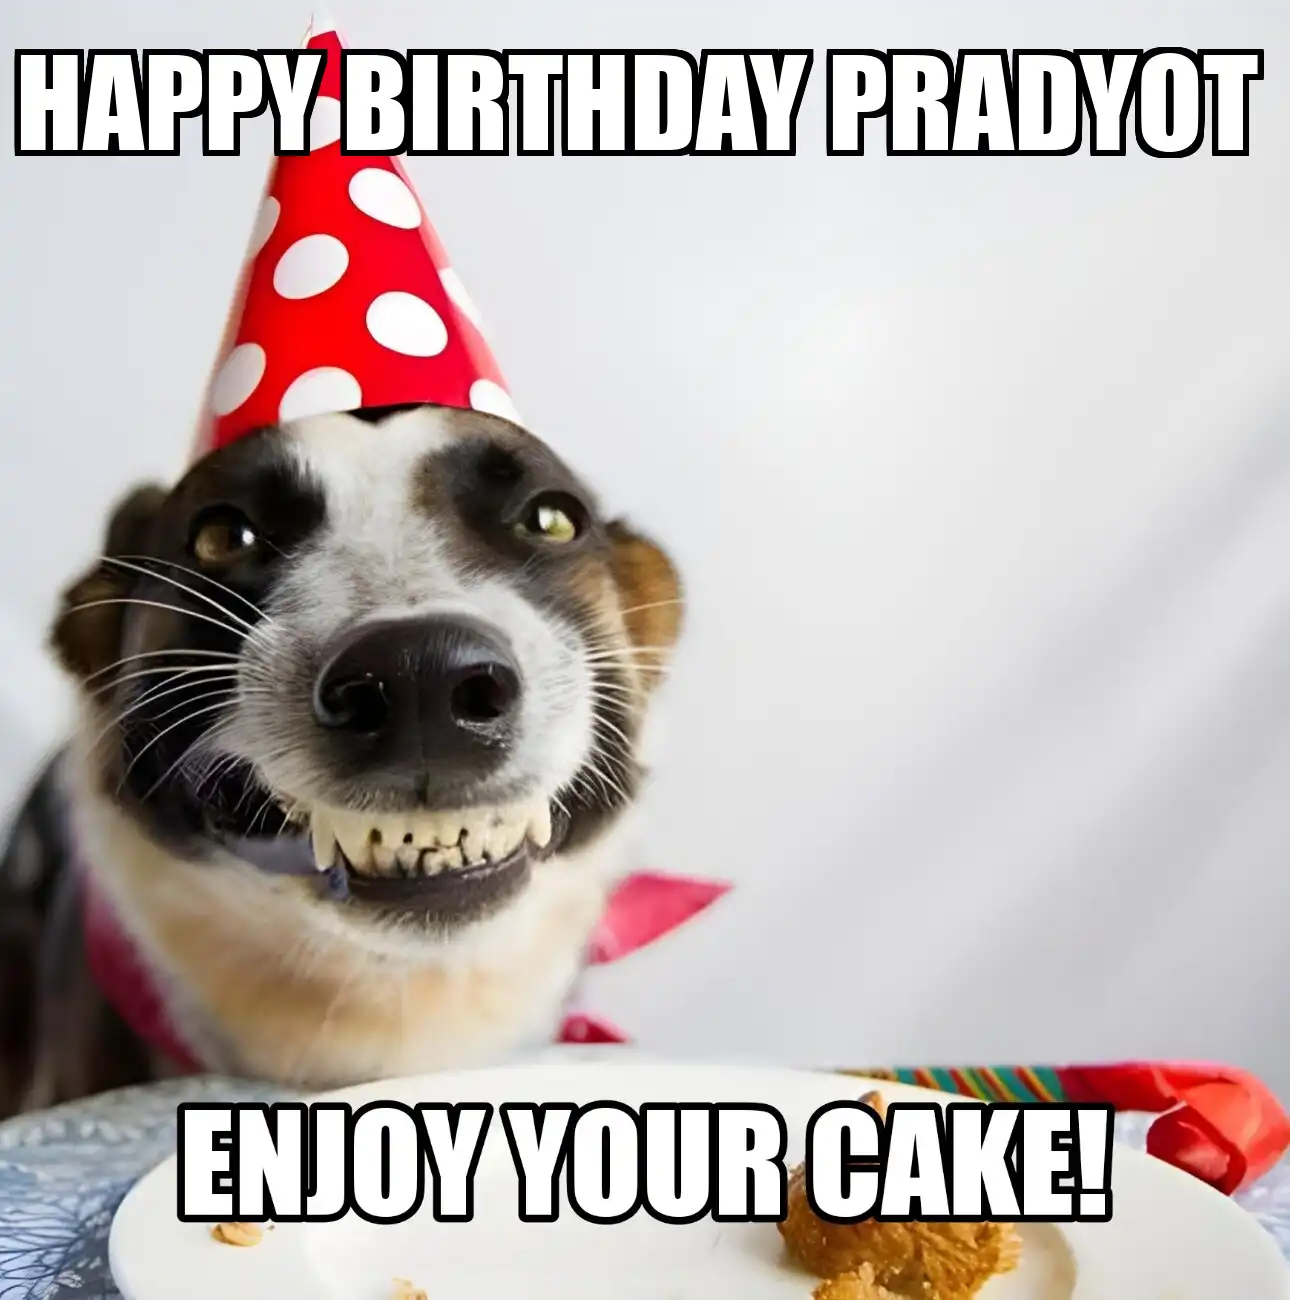 Happy Birthday Pradyot Enjoy Your Cake Dog Meme